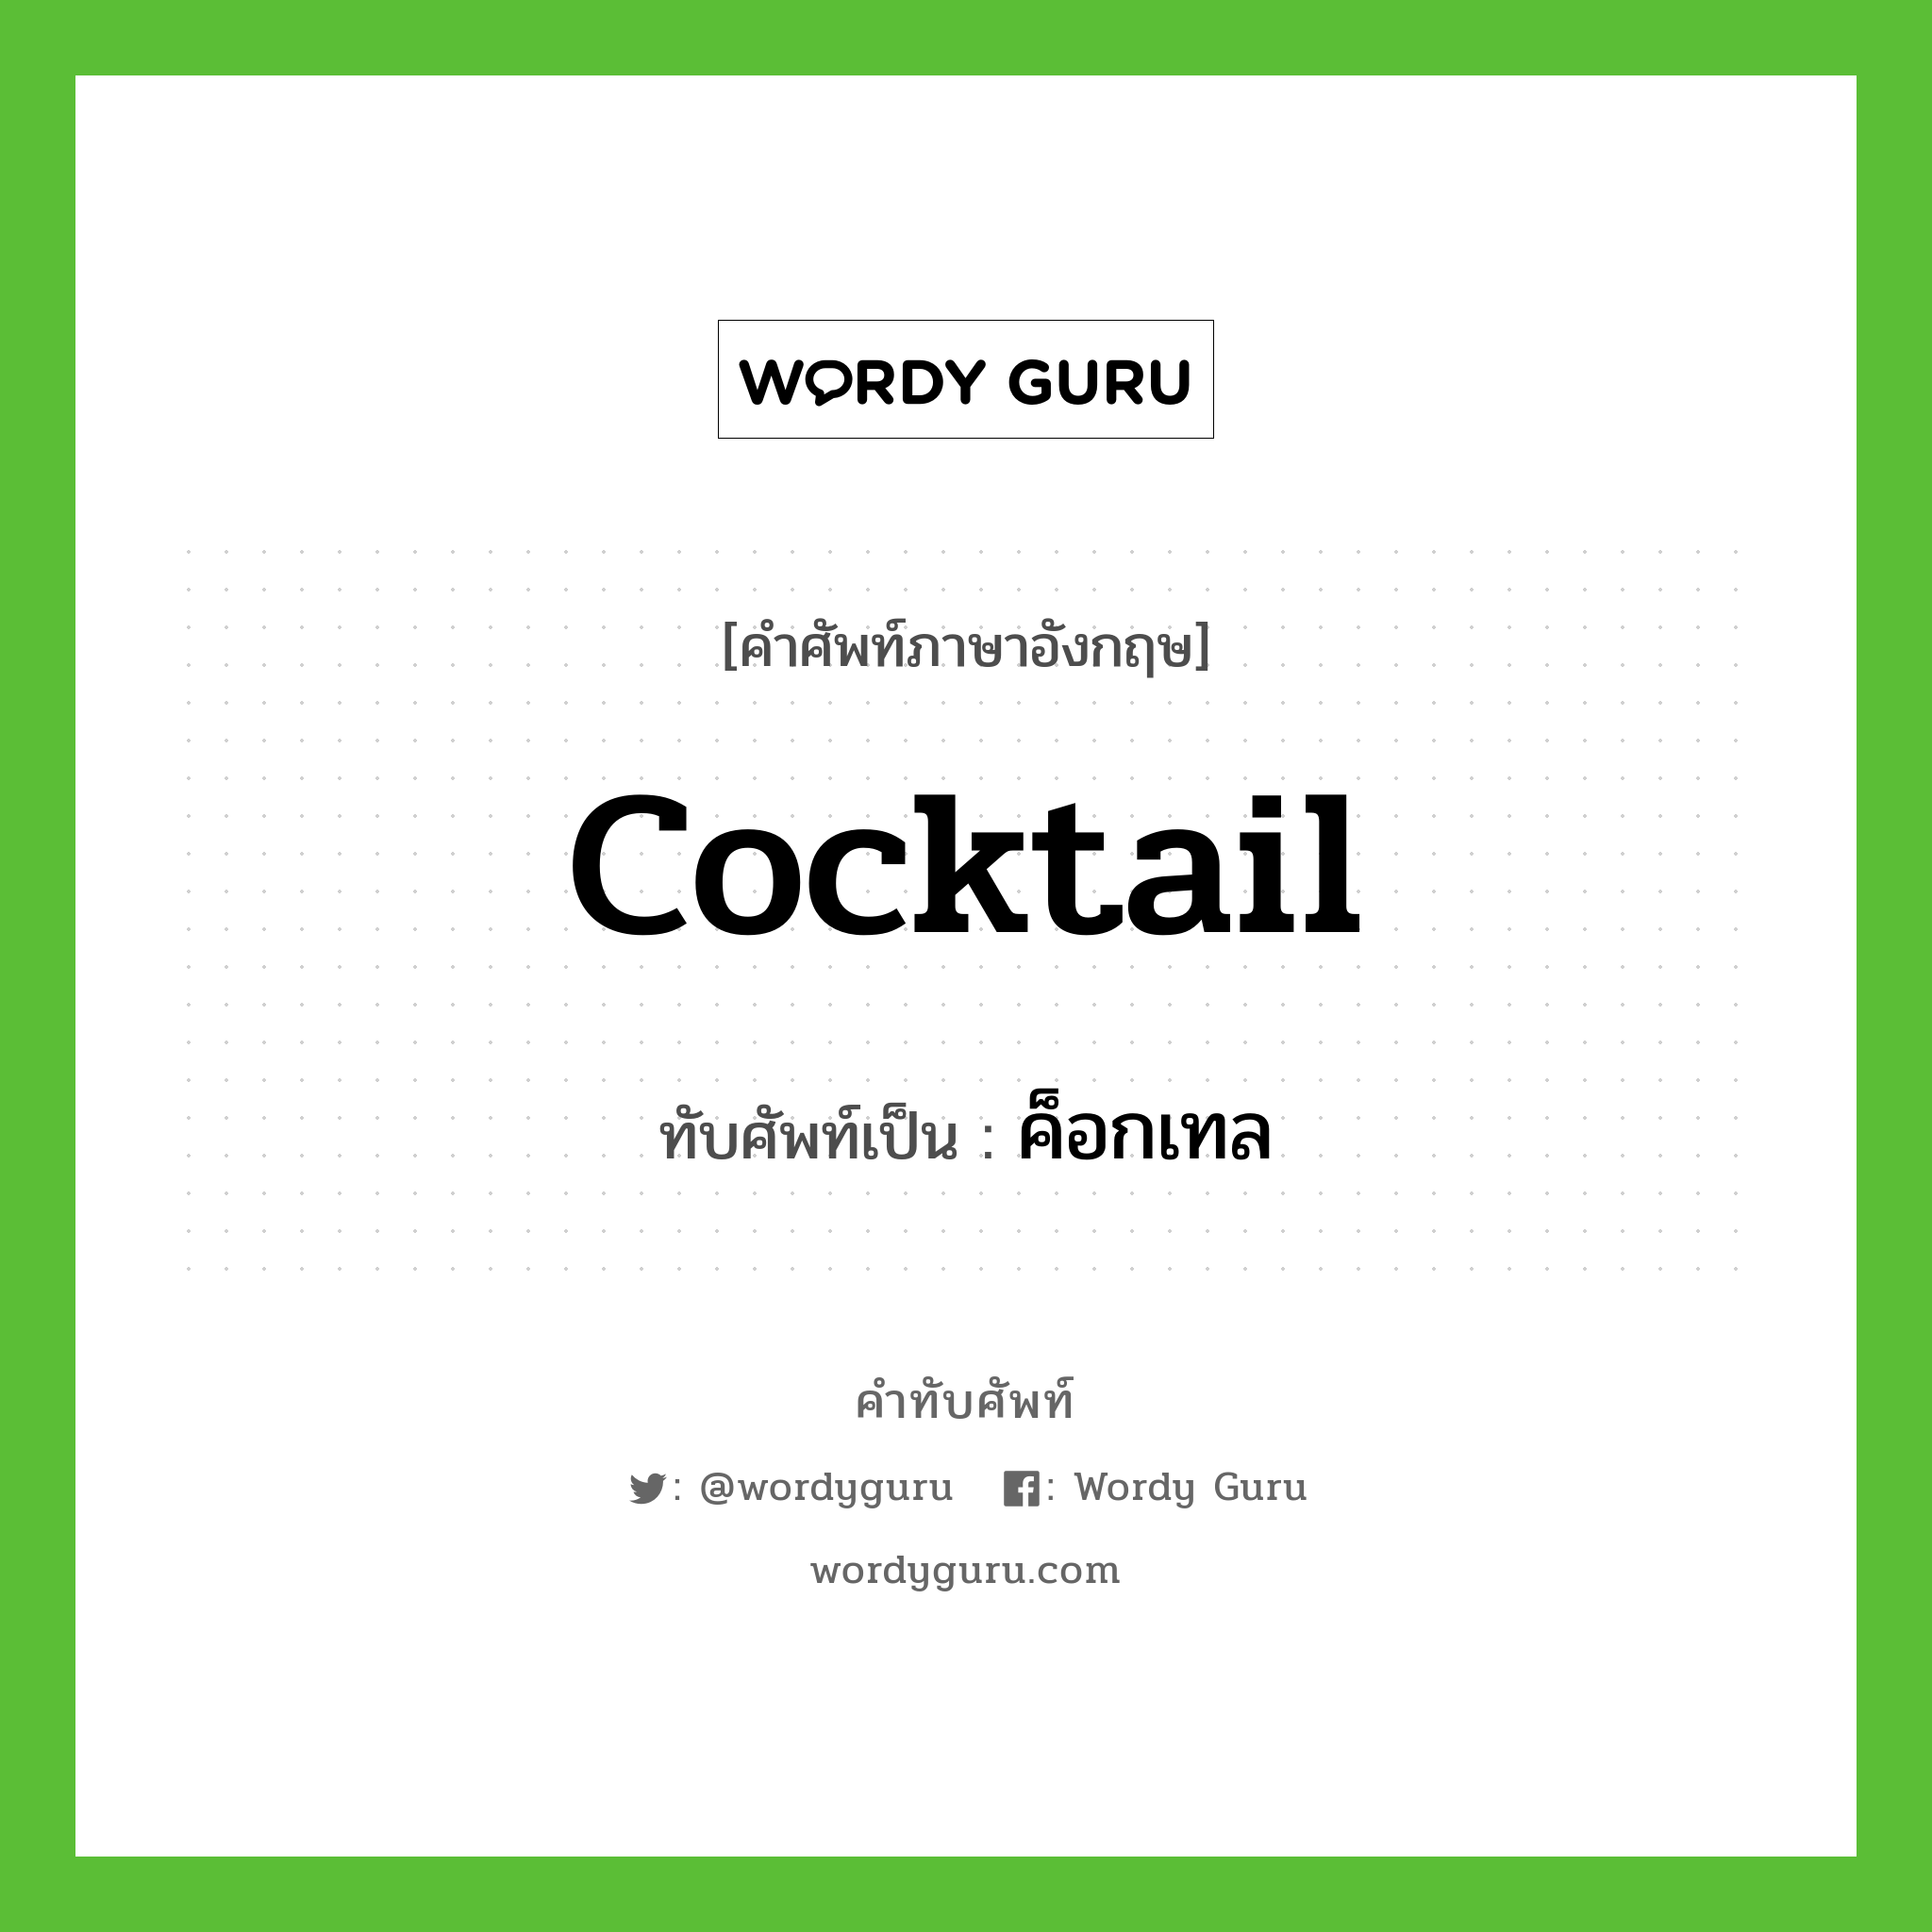 cocktail เขียนเป็นคำไทยว่าอะไร?, คำศัพท์ภาษาอังกฤษ cocktail ทับศัพท์เป็น ค็อกเทล